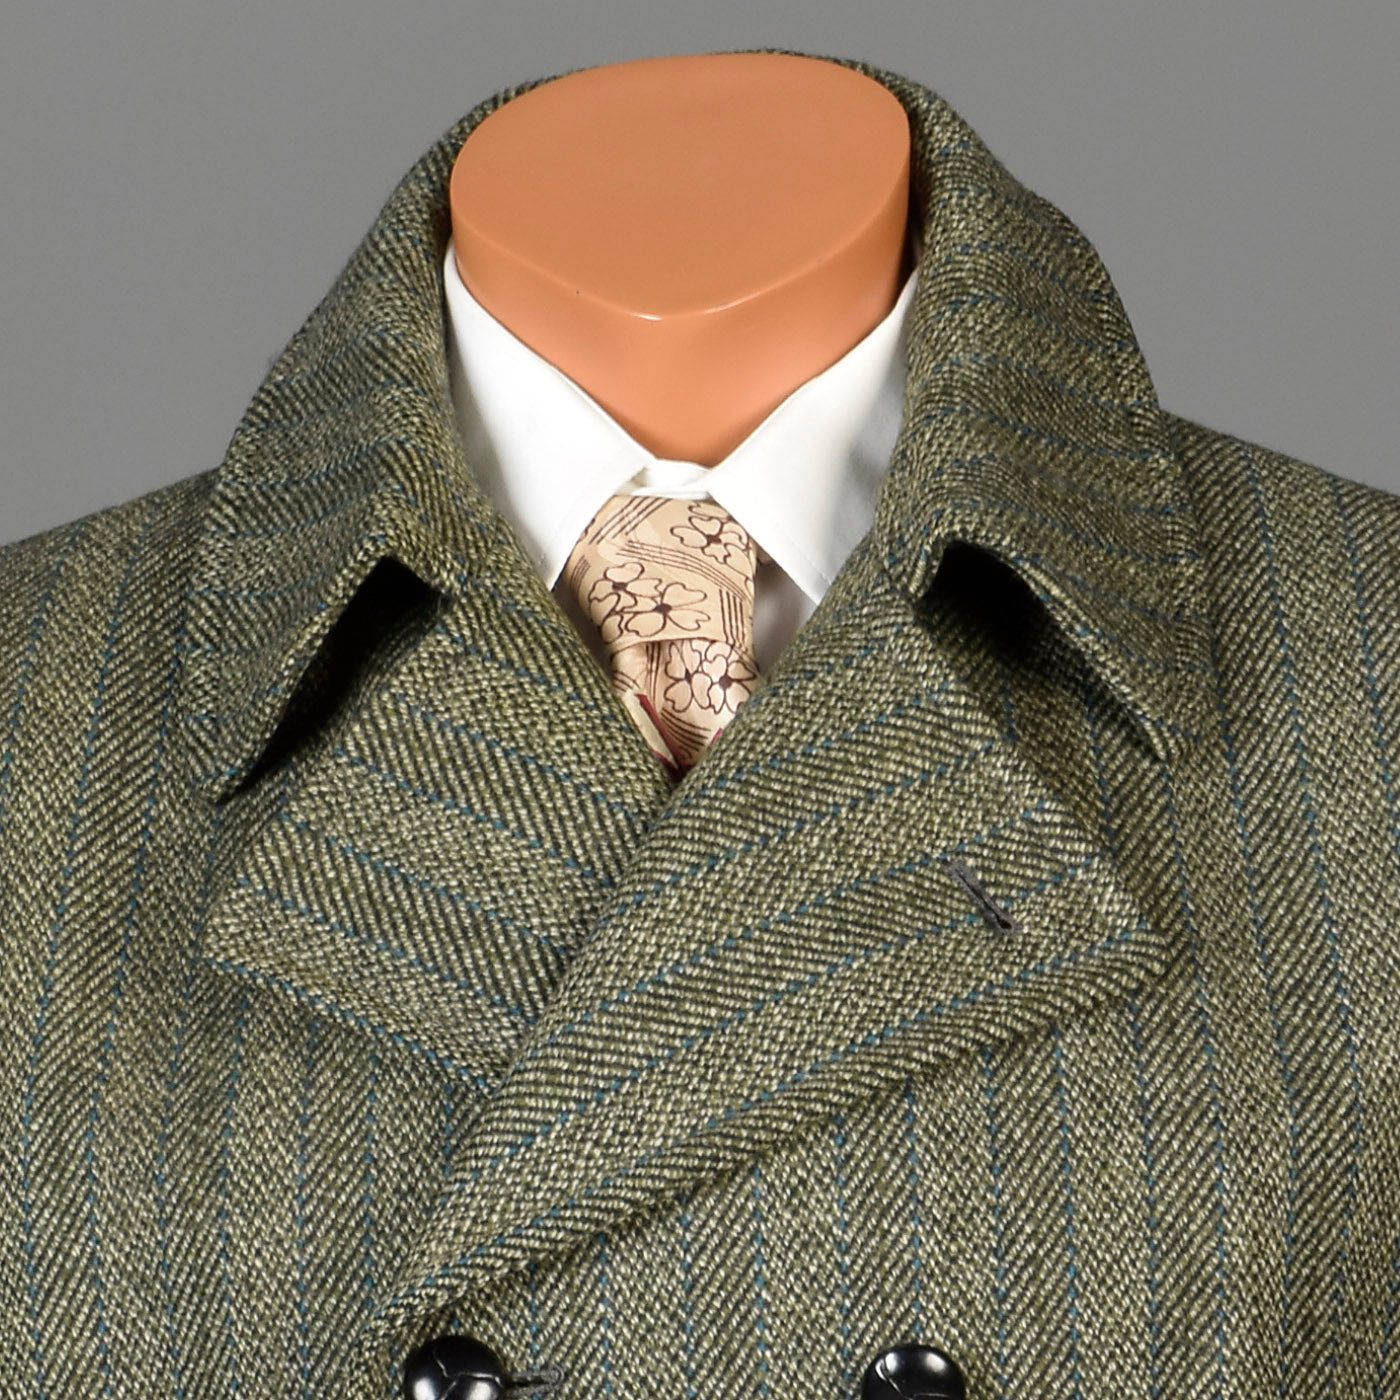 1970s Mens Mod Tweed Winter Coat